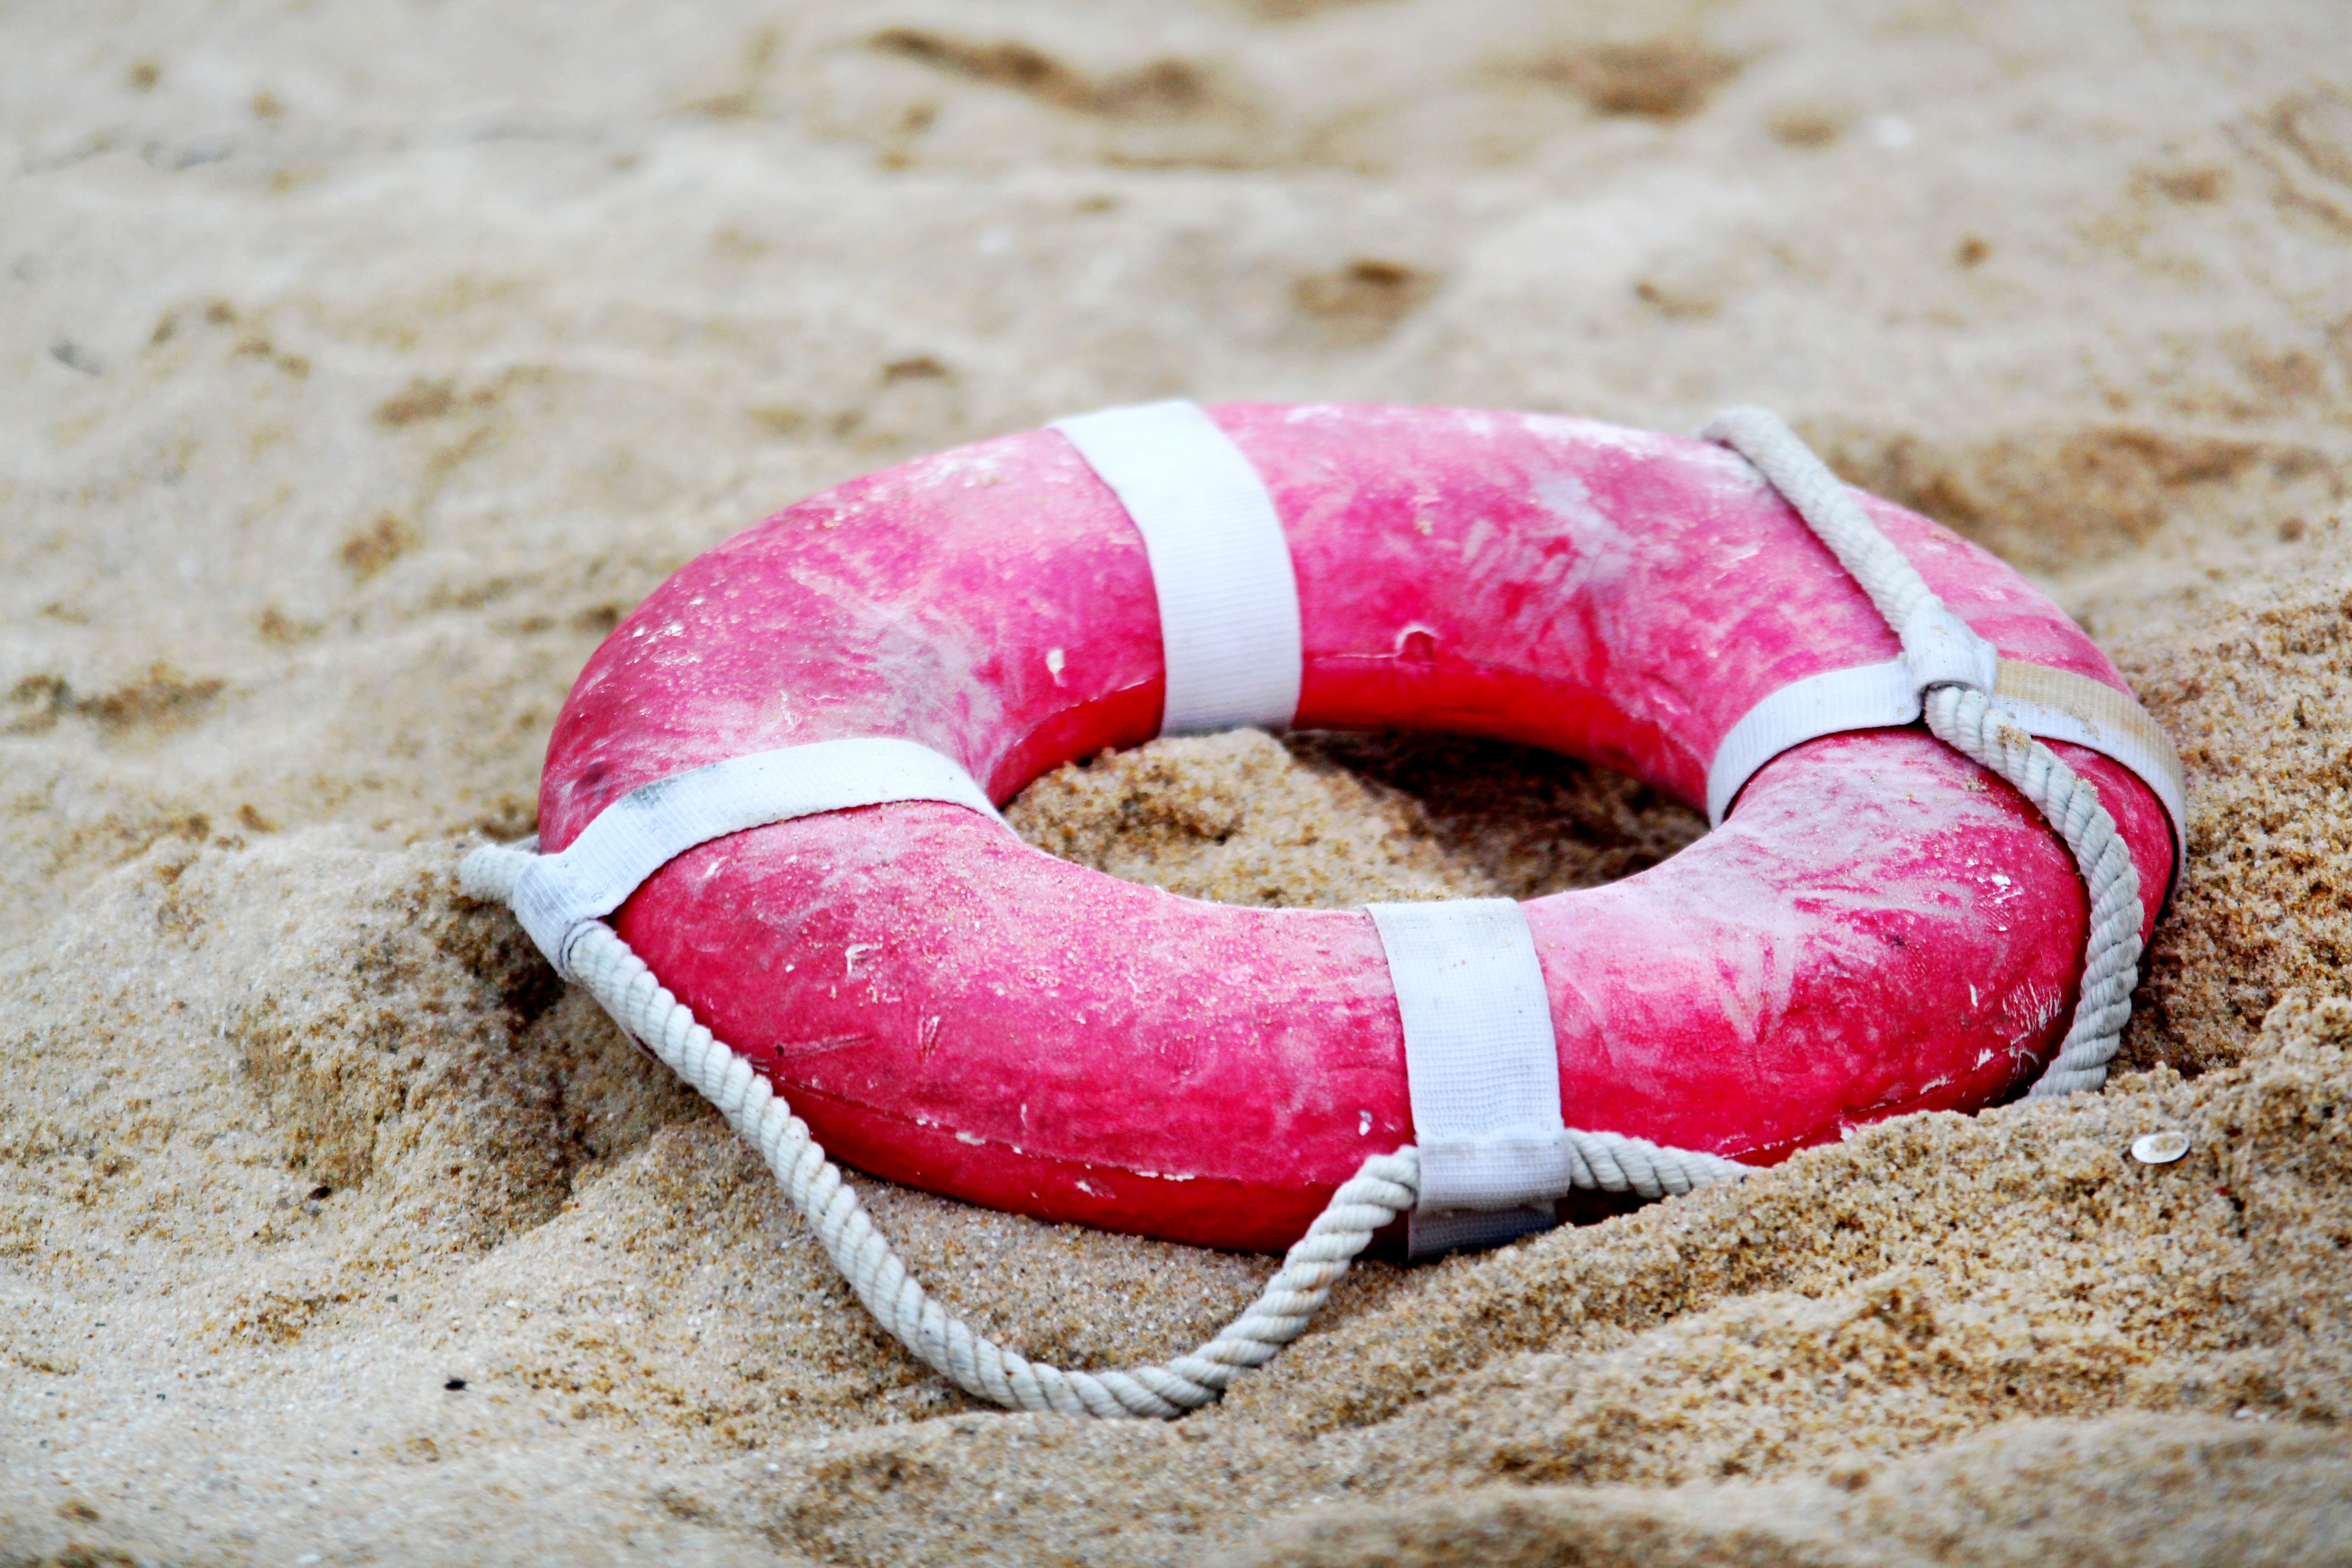 Спасательная музыка. Спасательный круг lifebuoy. Спасательный круг на пляже. Спасательный круг YF GKZ;E. Спасательный круг на песке.